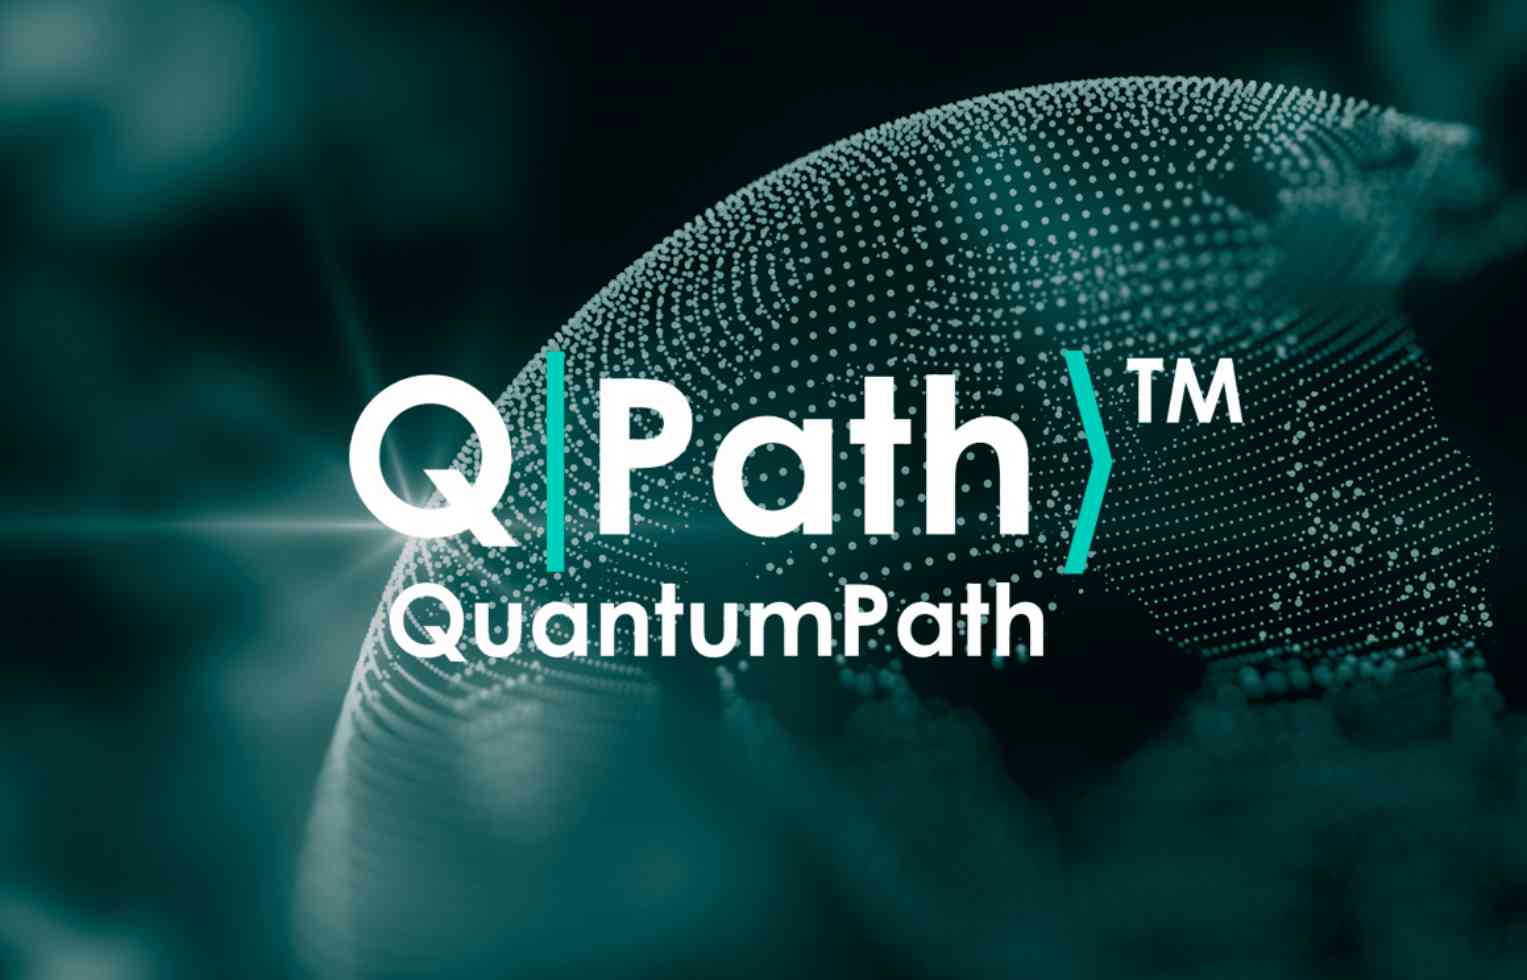 QuantumPath